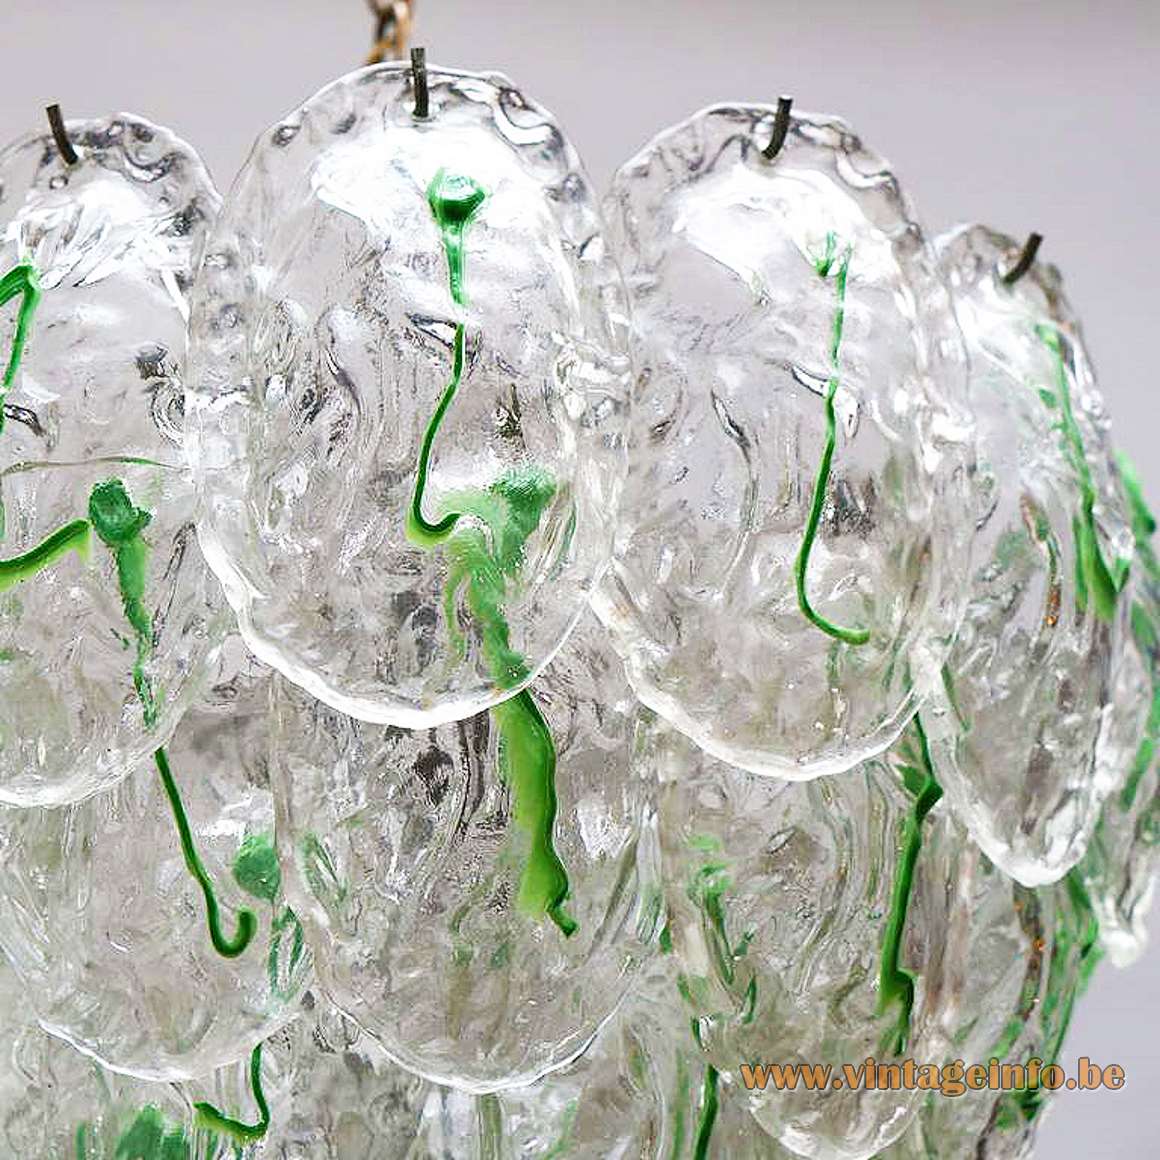 AV Mazzega green glass leaves chandelier 40 Murano leaves chrome frame chain 12 sockets 1960s 1970s